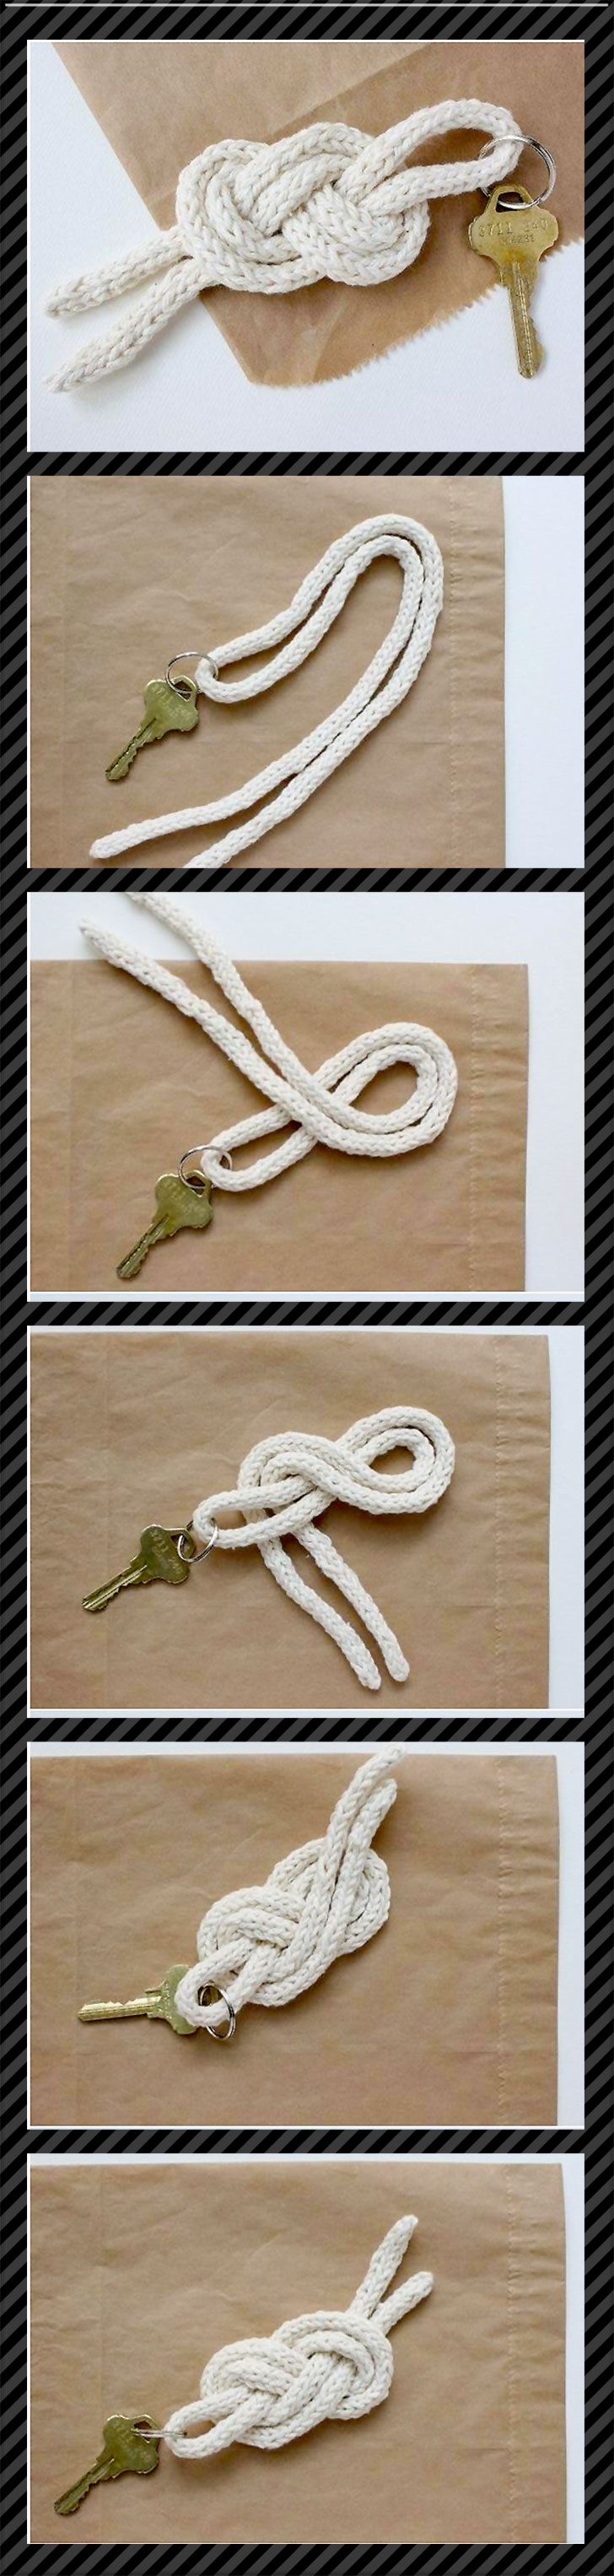 Chaveiro feito de nó com um cordao